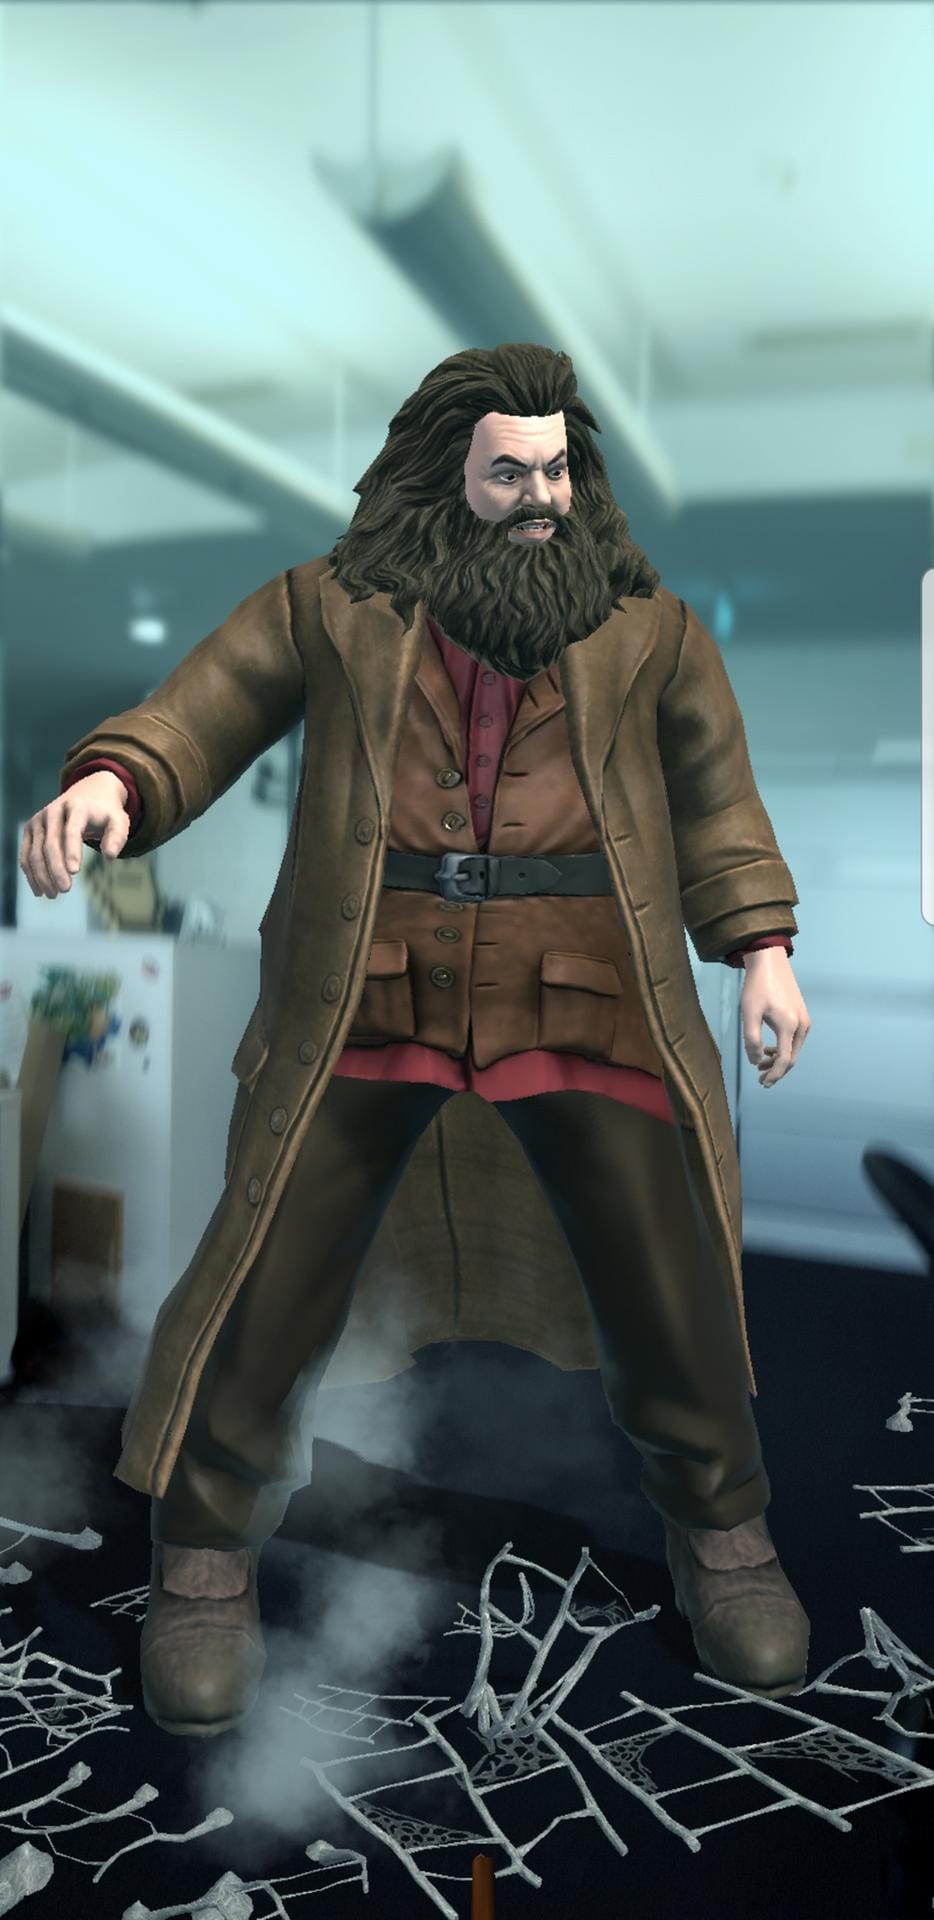 Spieler treffen auch auf bekannte Charaktere aus Harry Potter, wie Hagrid.